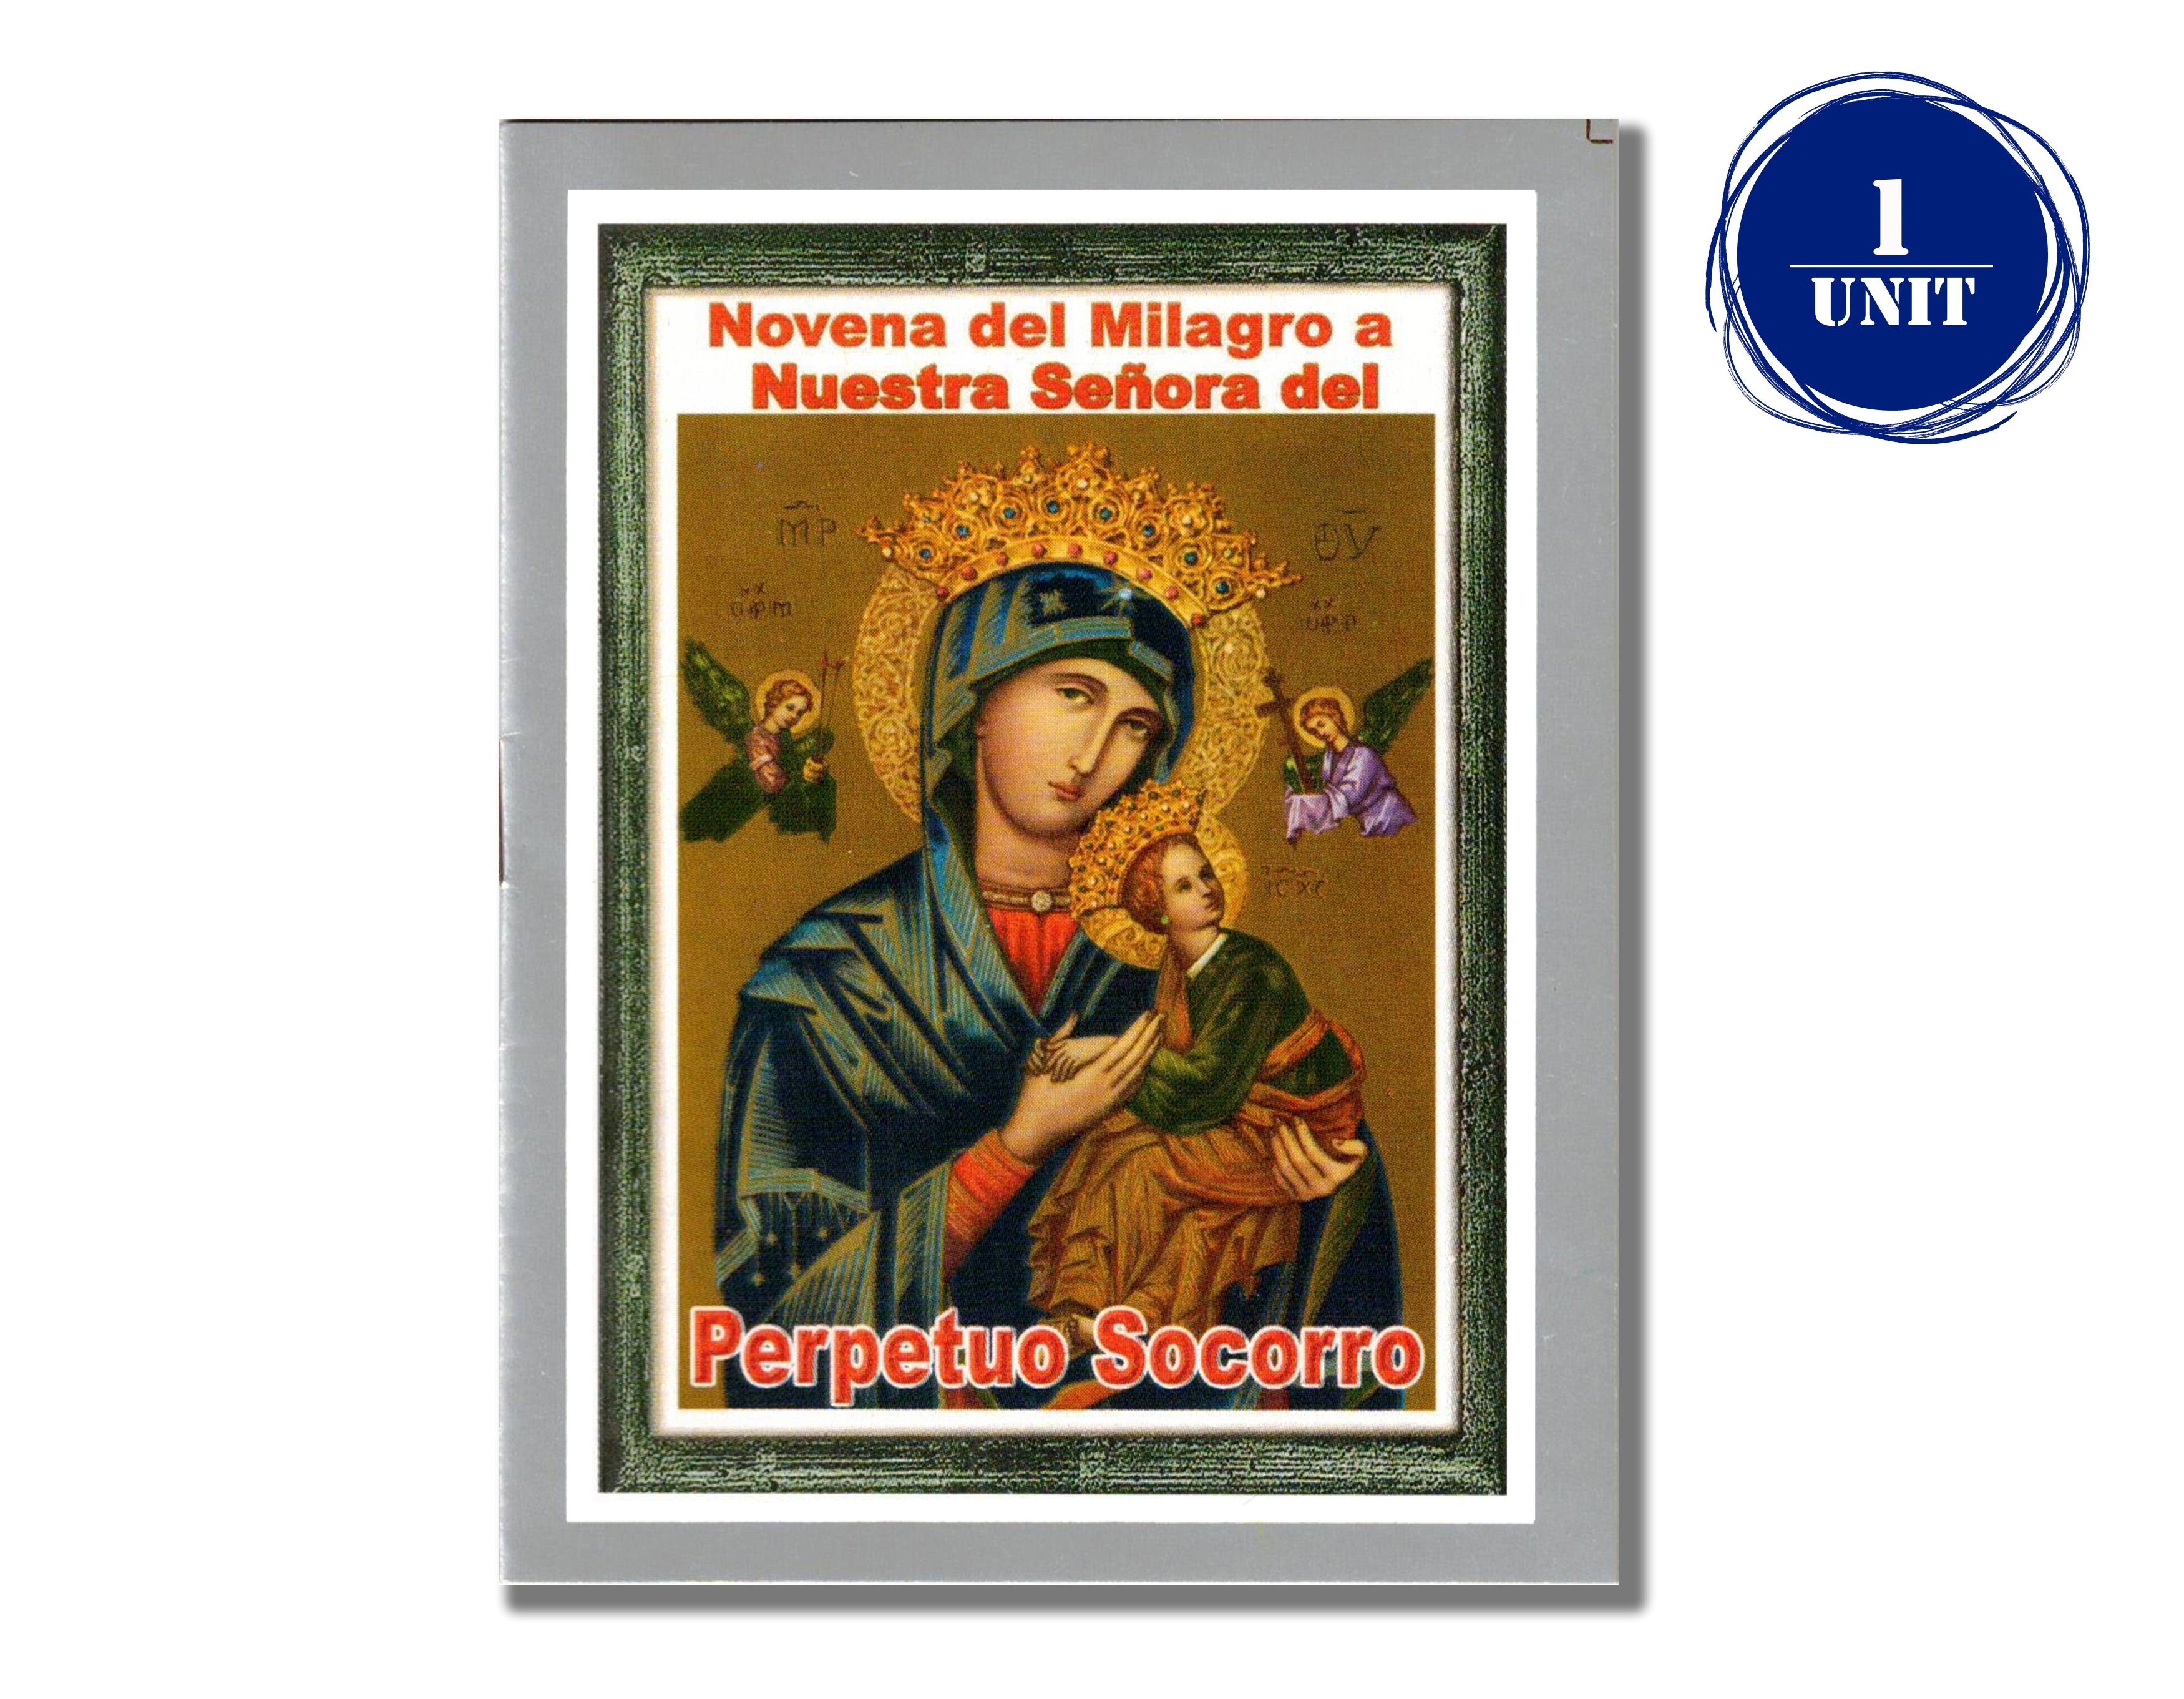 Novena del Milagro a Nuestra Señora del Perpetuo Socorro